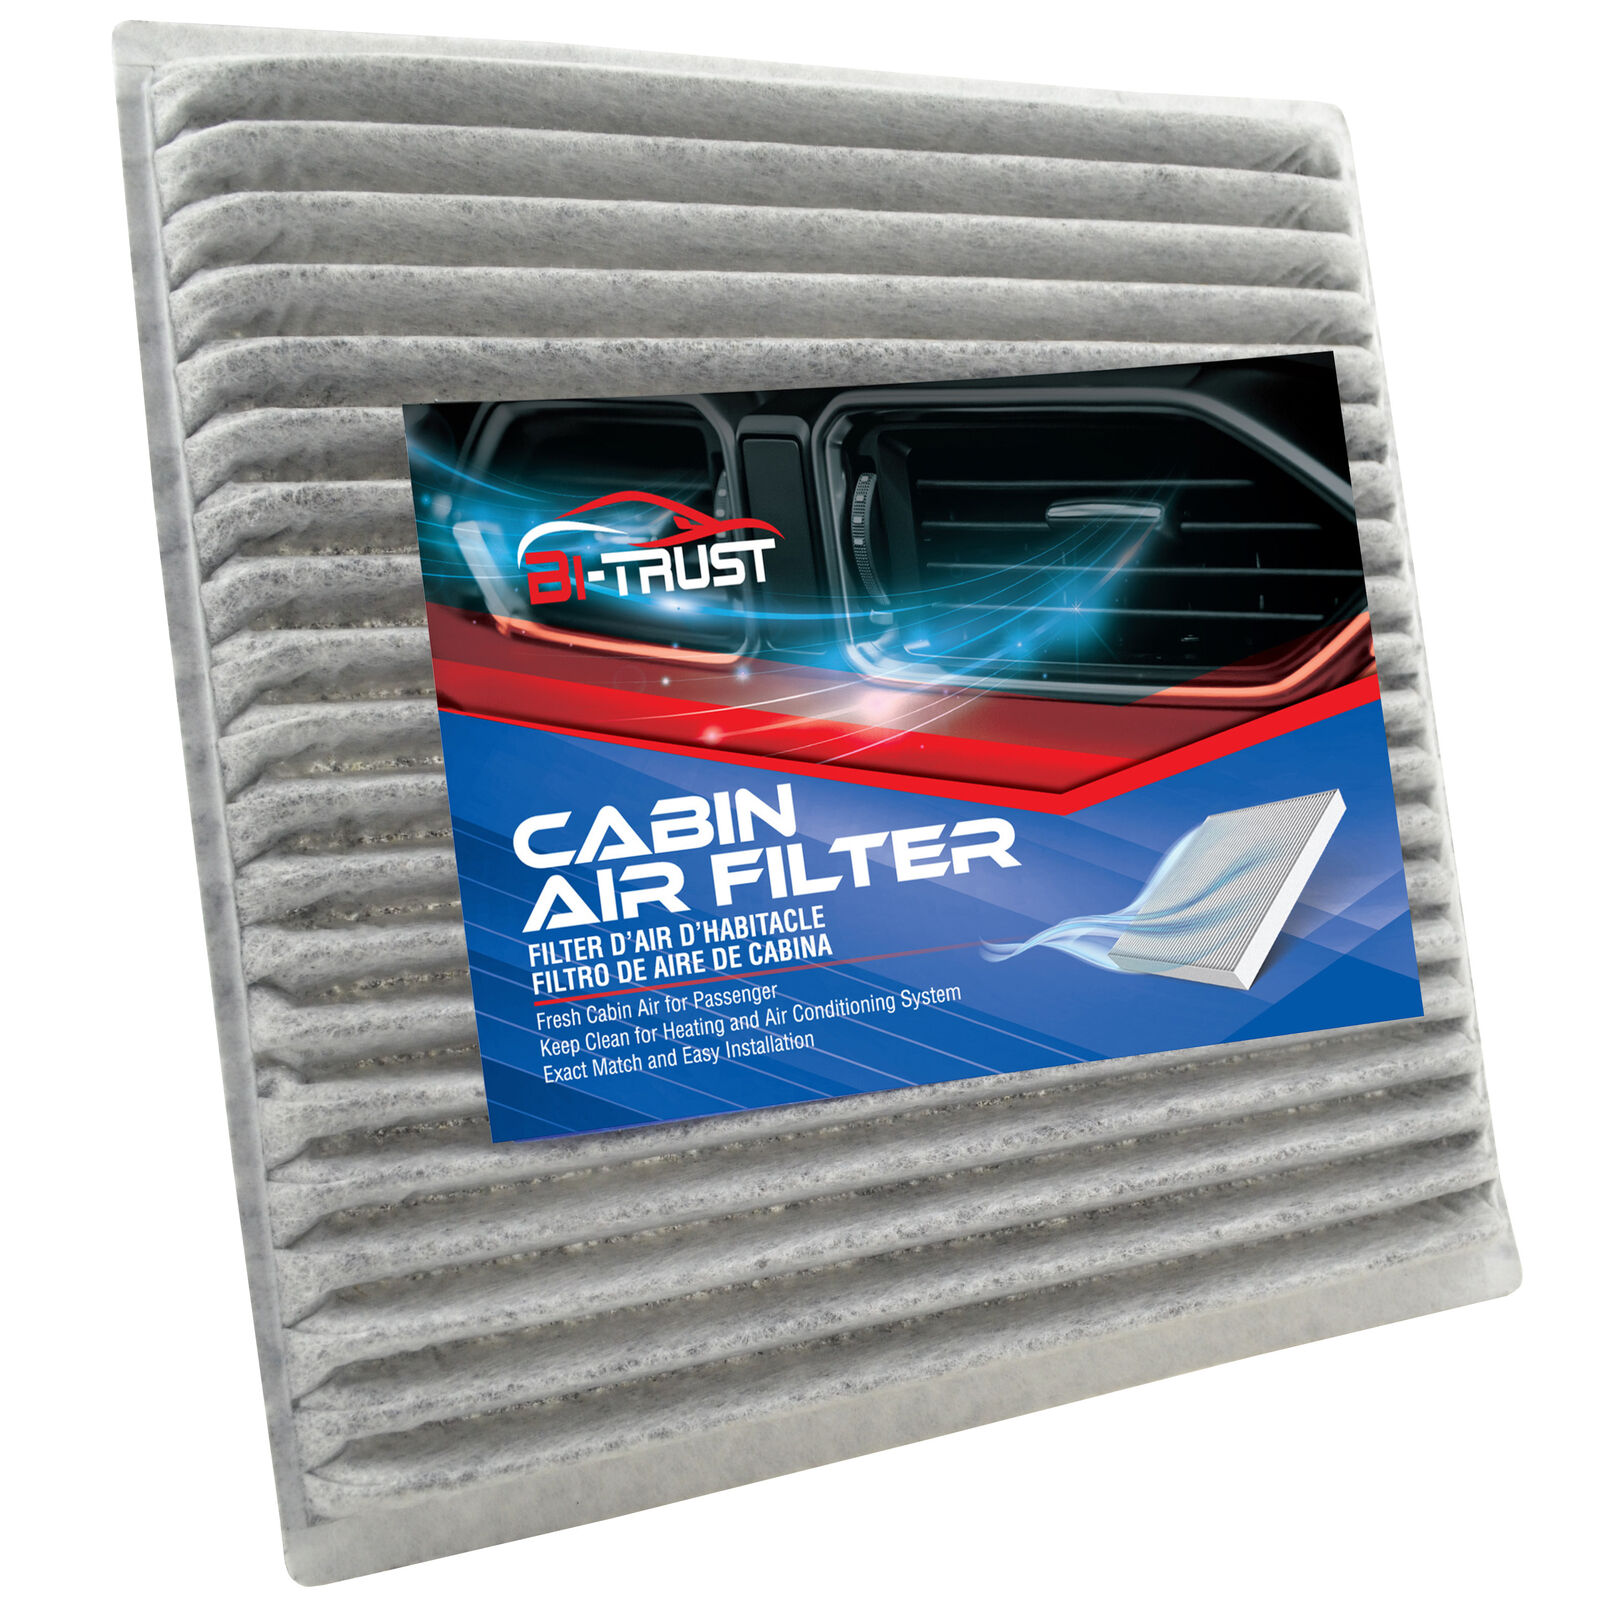 Cabin Air Filter for Toyota Fj Cruiser Prius Sienna Celica 4Runner 87139-47010